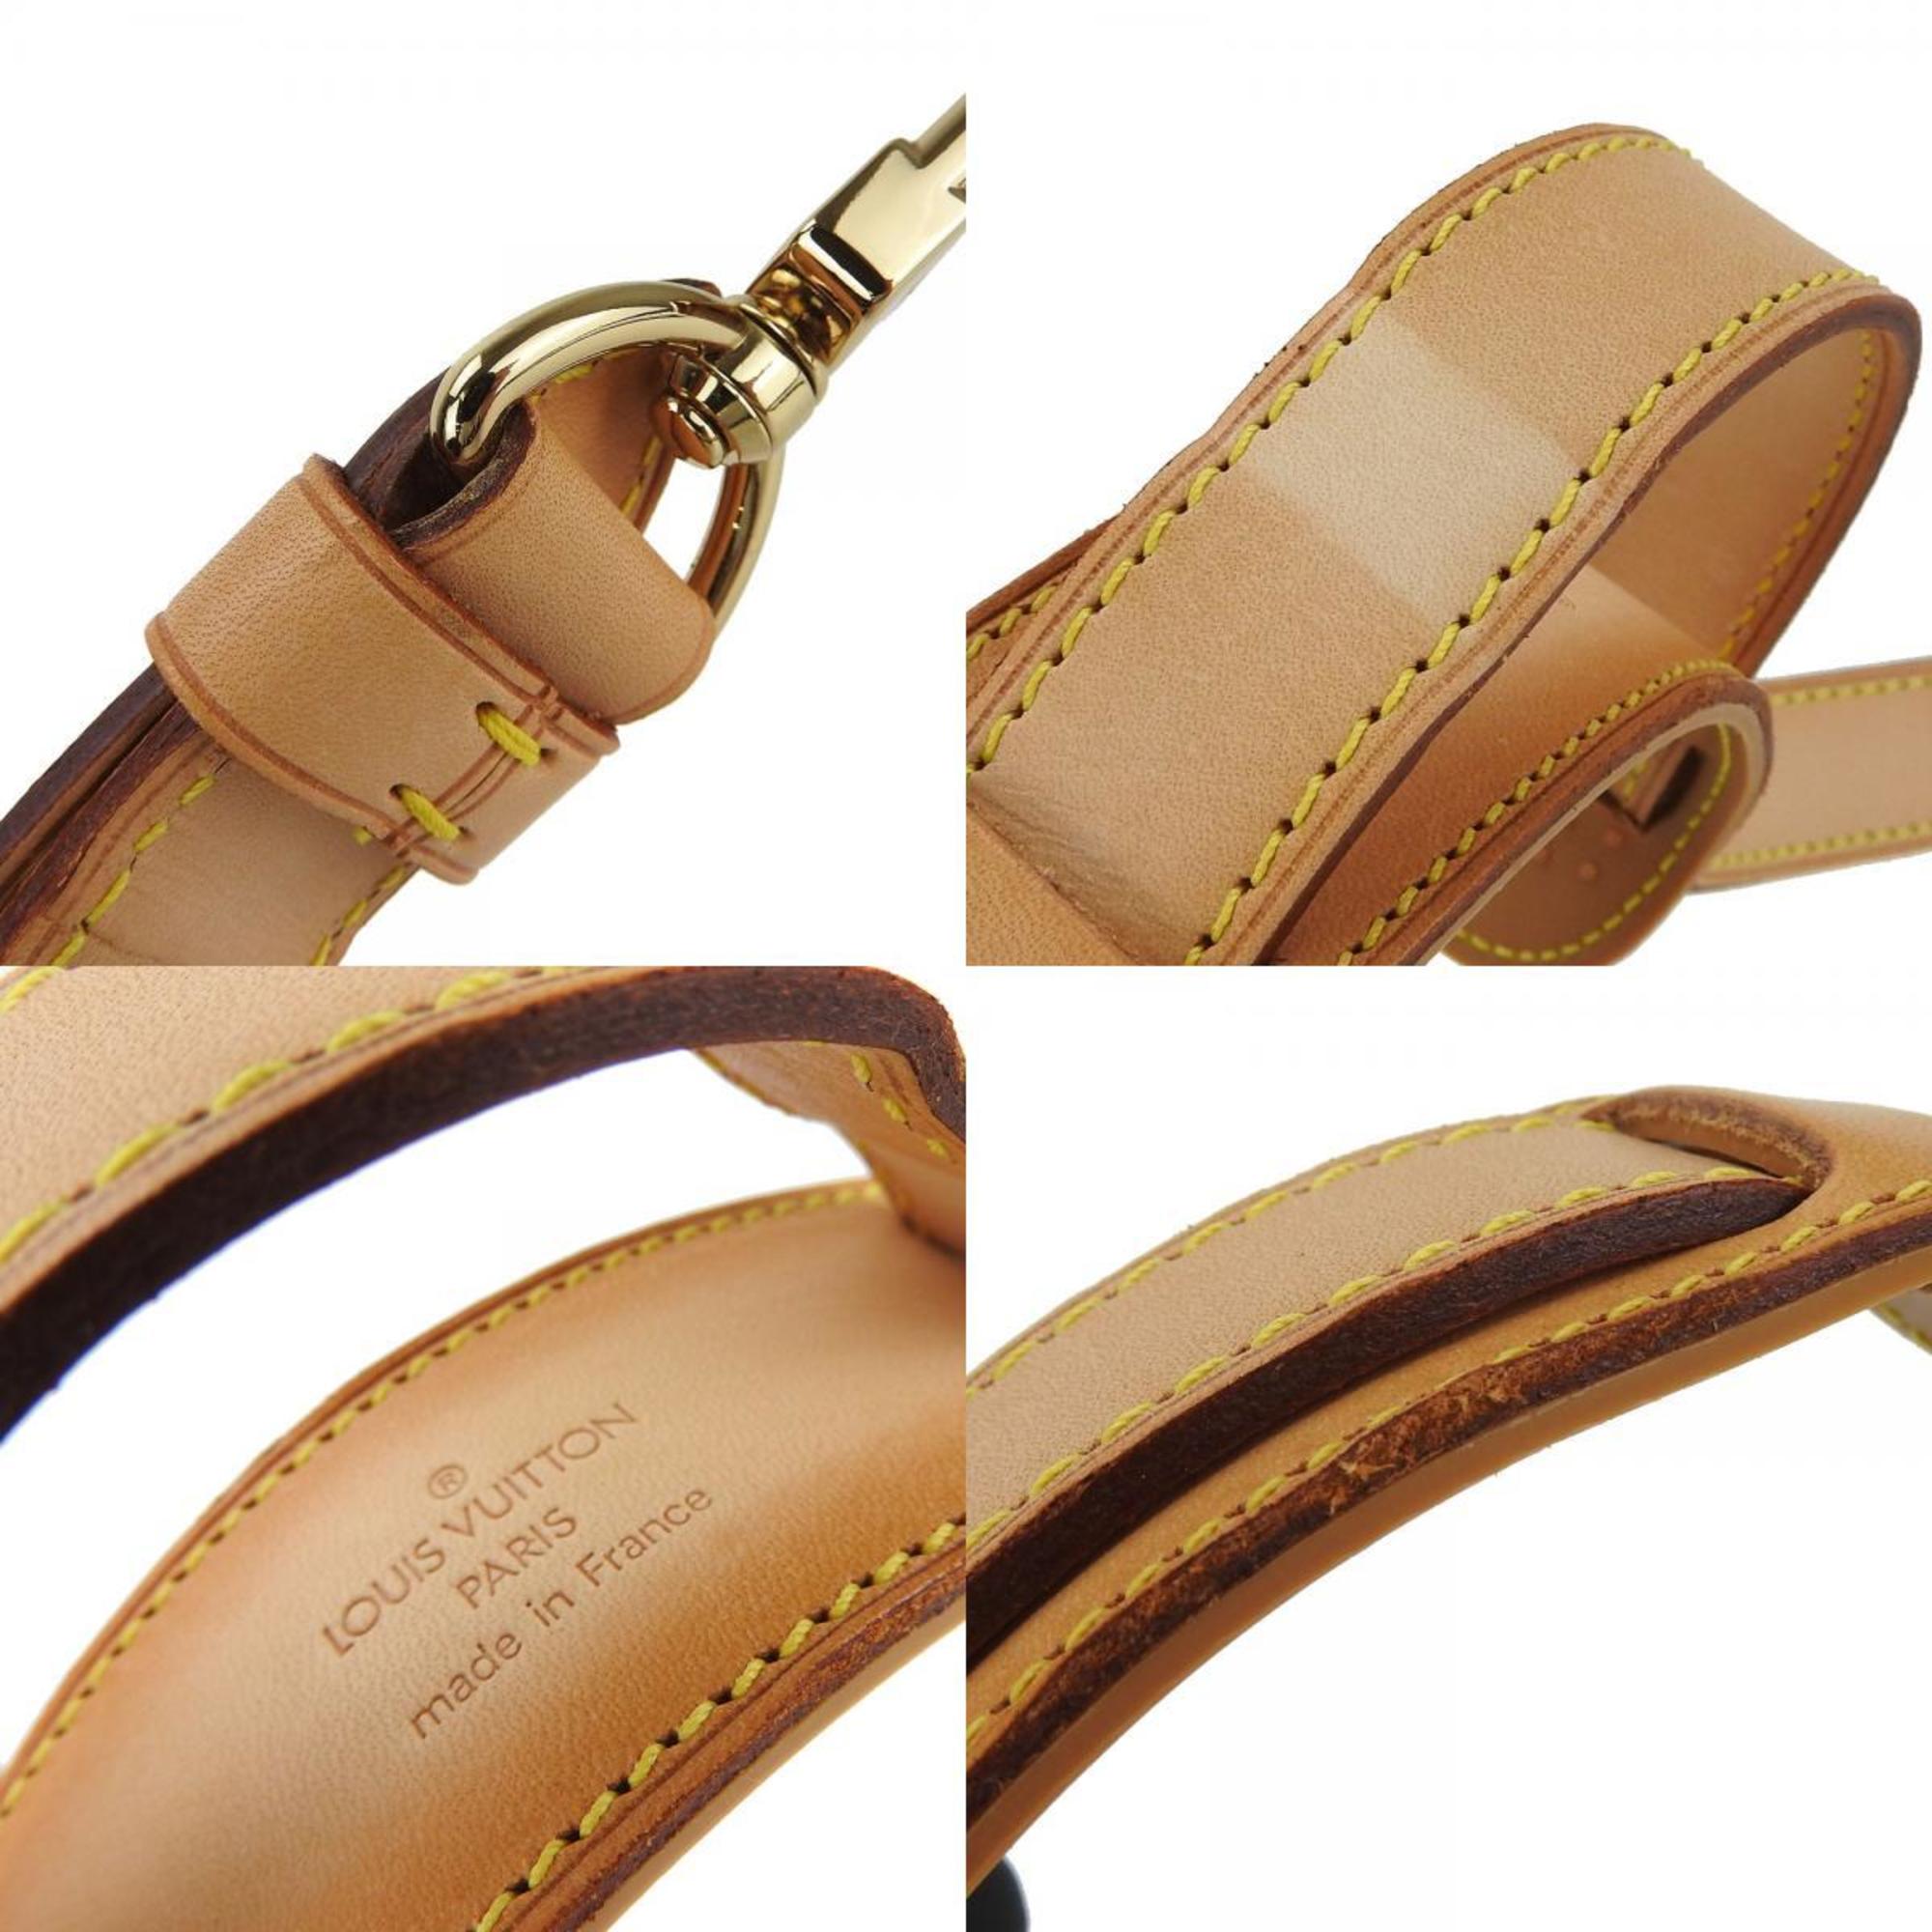 Louis Vuitton Shoulder Strap, Natural Leather, Adjustable Strap for Keepall, Women's, Men's, LOUIS VUITTON